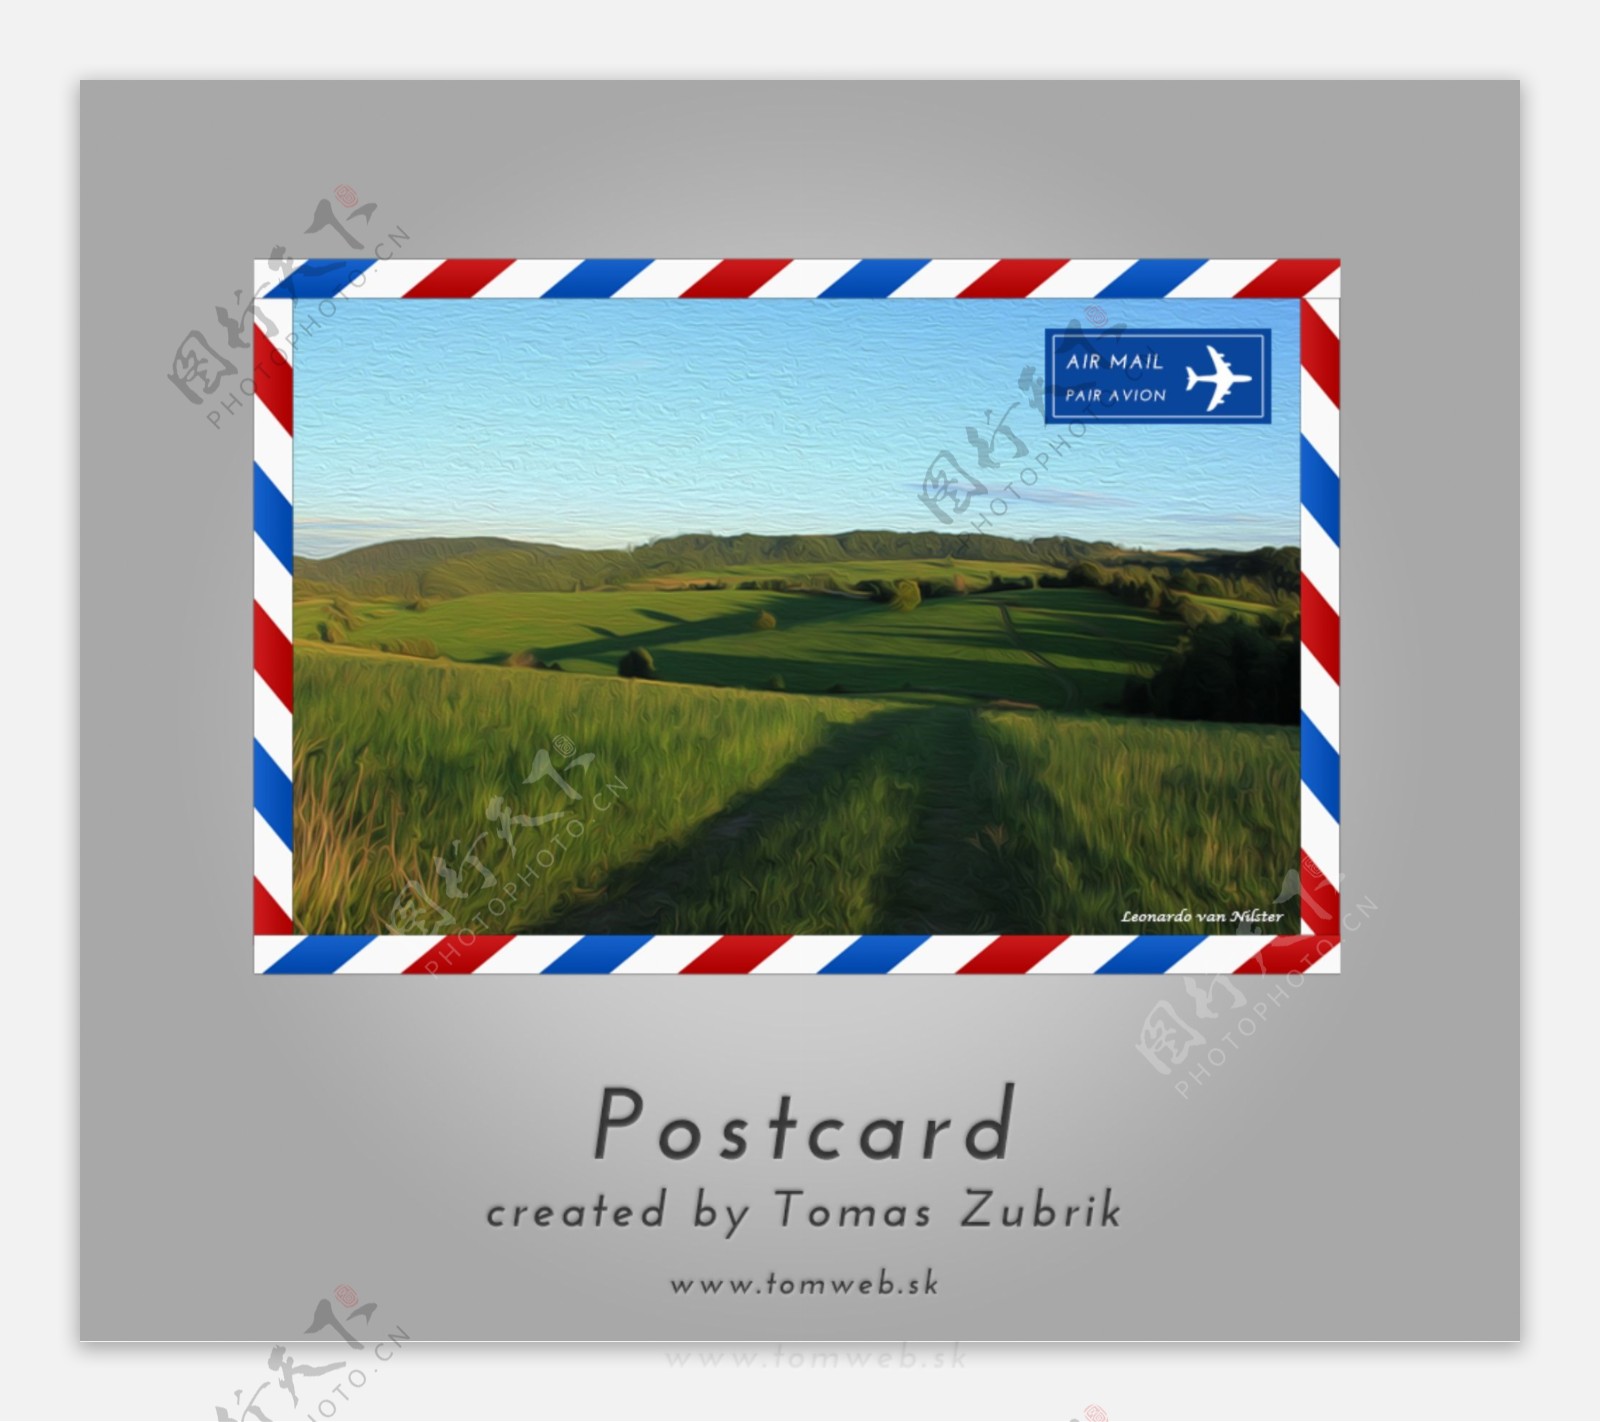 航空邮件的邮资明信片设计PSD